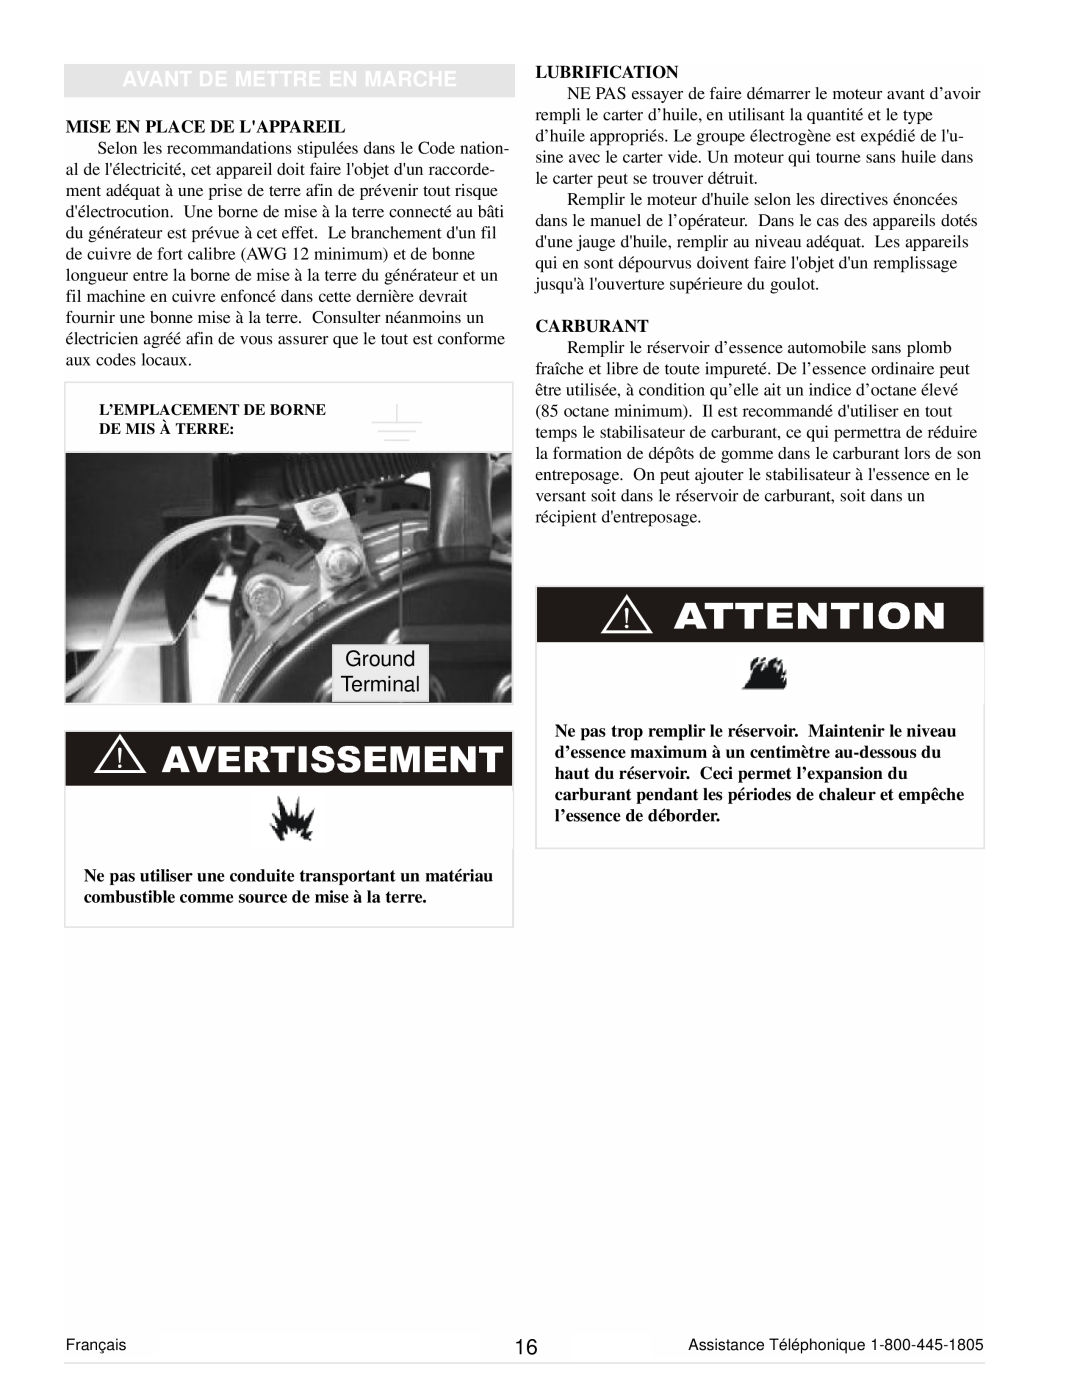 Powermate PC0101100 manual Avant De Mettre En Marche, Ground Terminal, Mise En Place De Lappareil, Lubrification, Carburant 